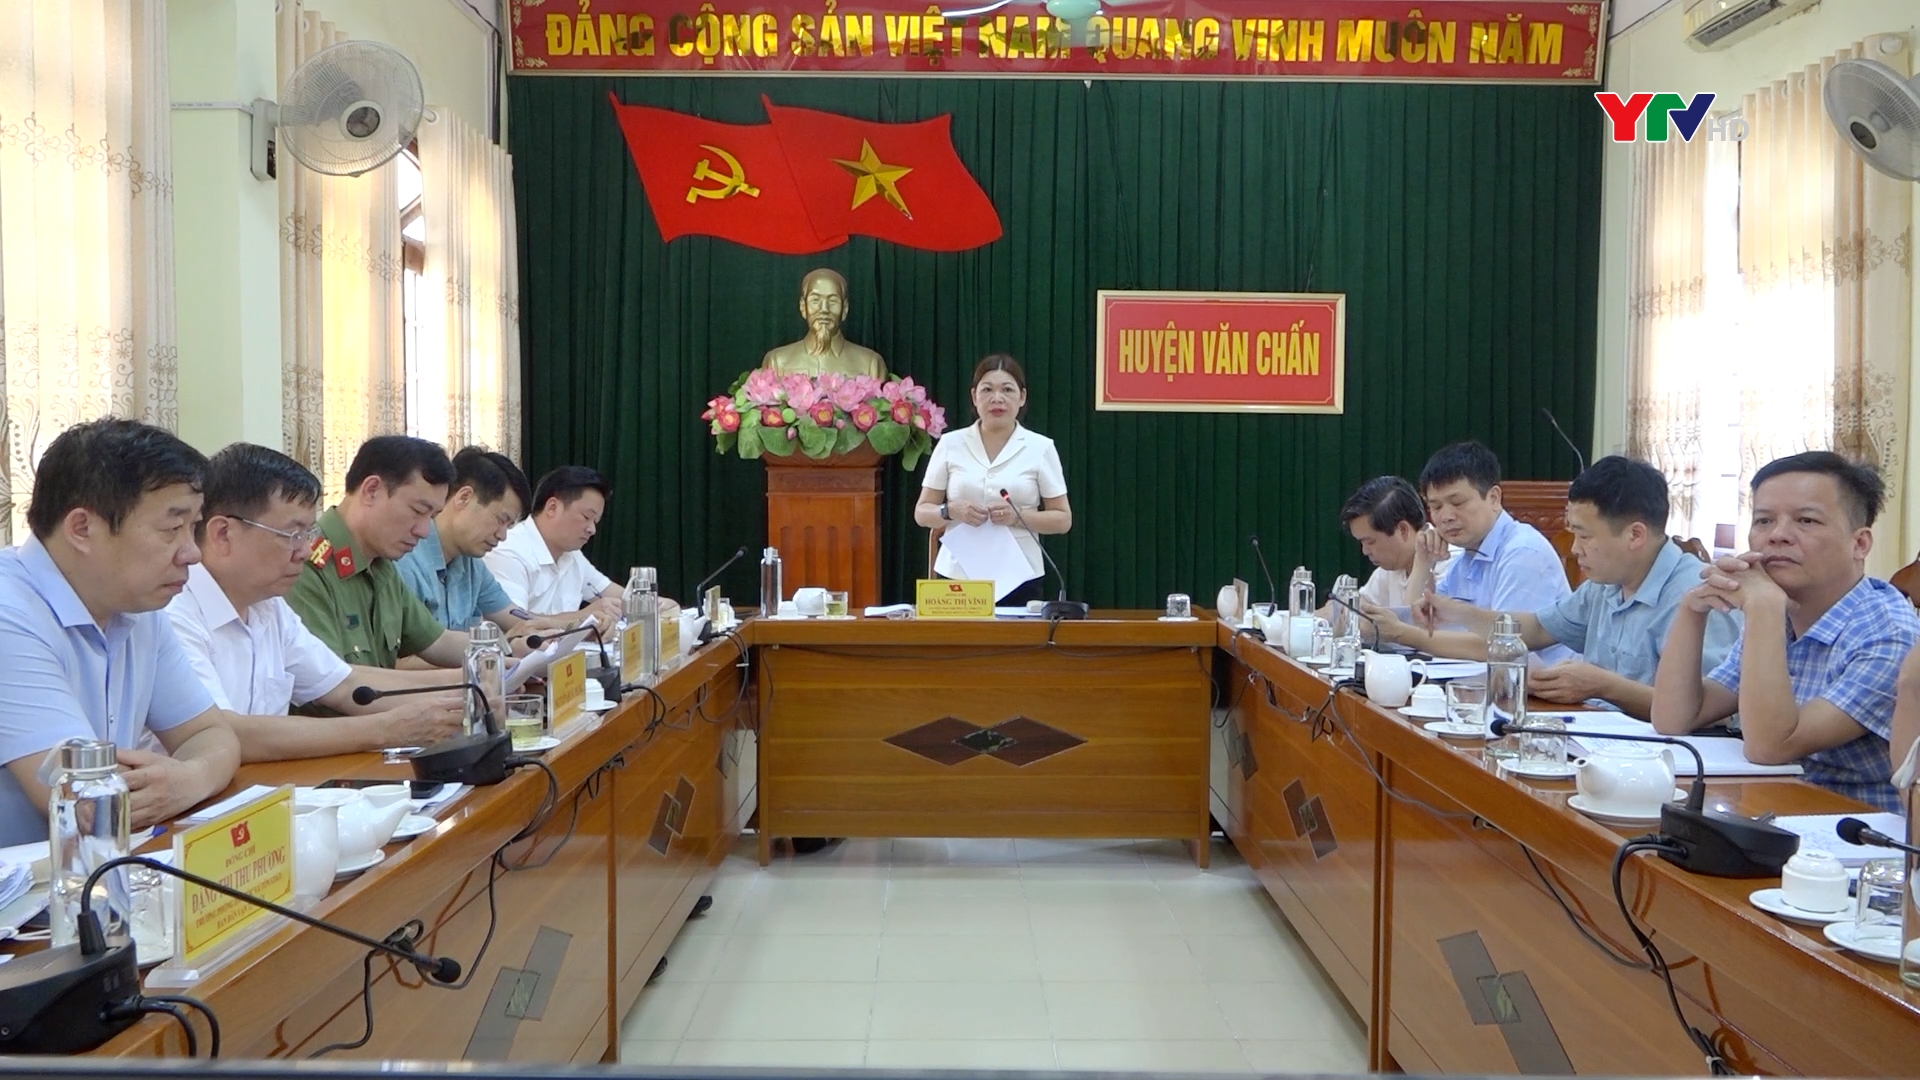 Ban Chỉ đạo công tác tín ngưỡng, tôn giáo tỉnh Yên Bái làm việc tại huyện Văn Chấn